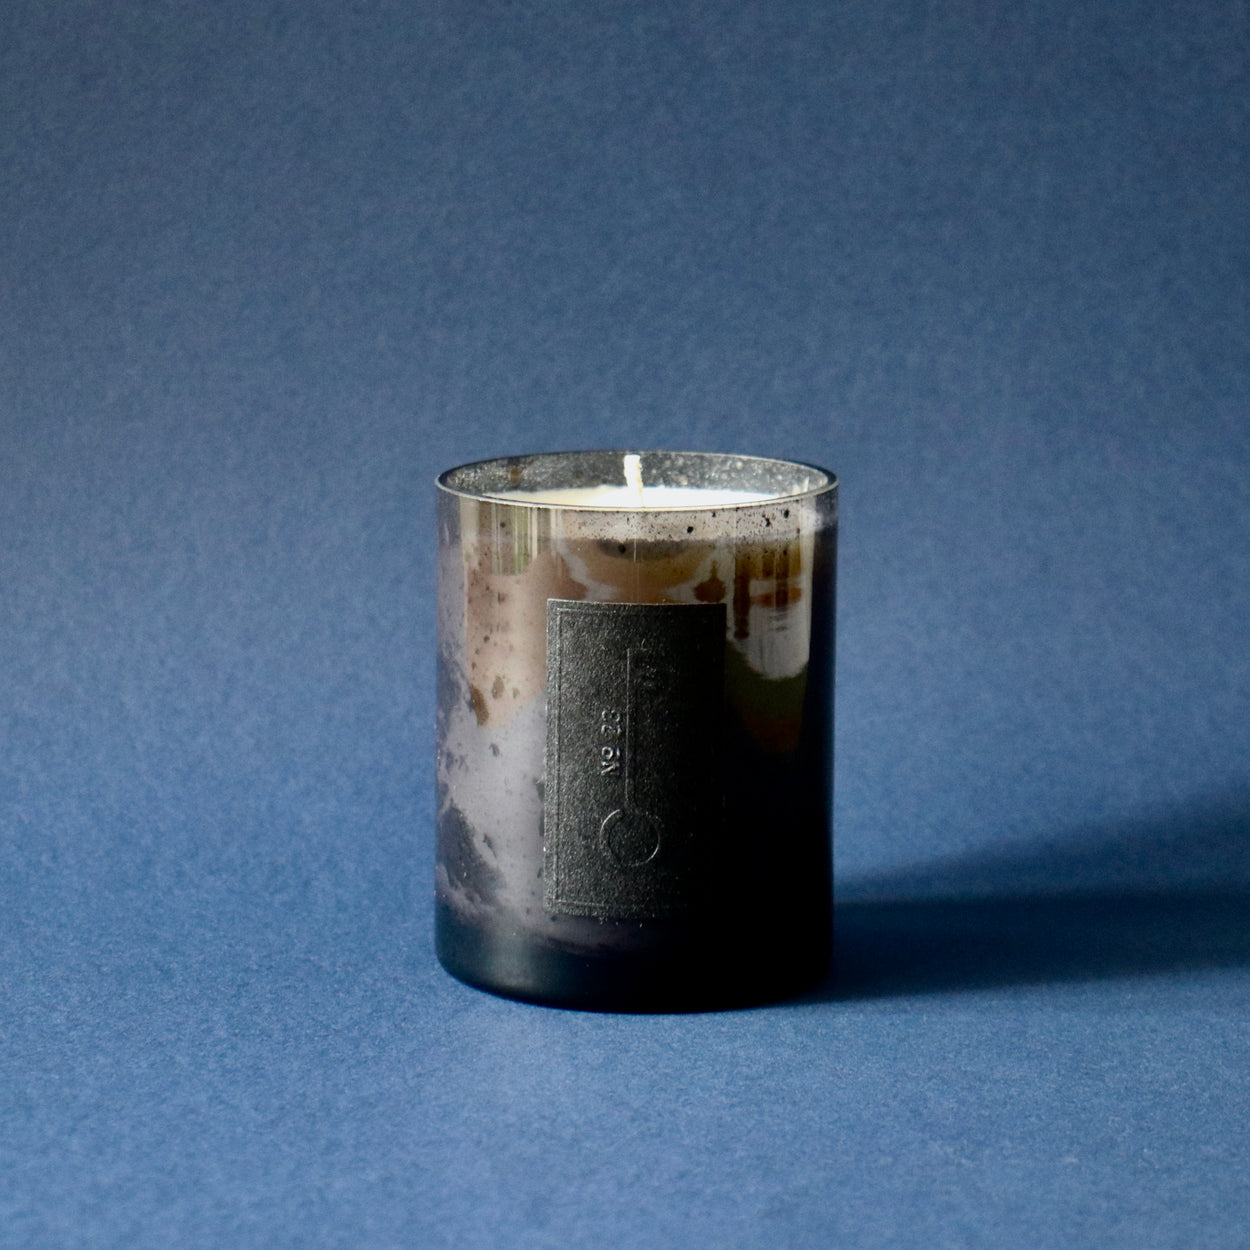 Fischersund No.23 candle against blue background.